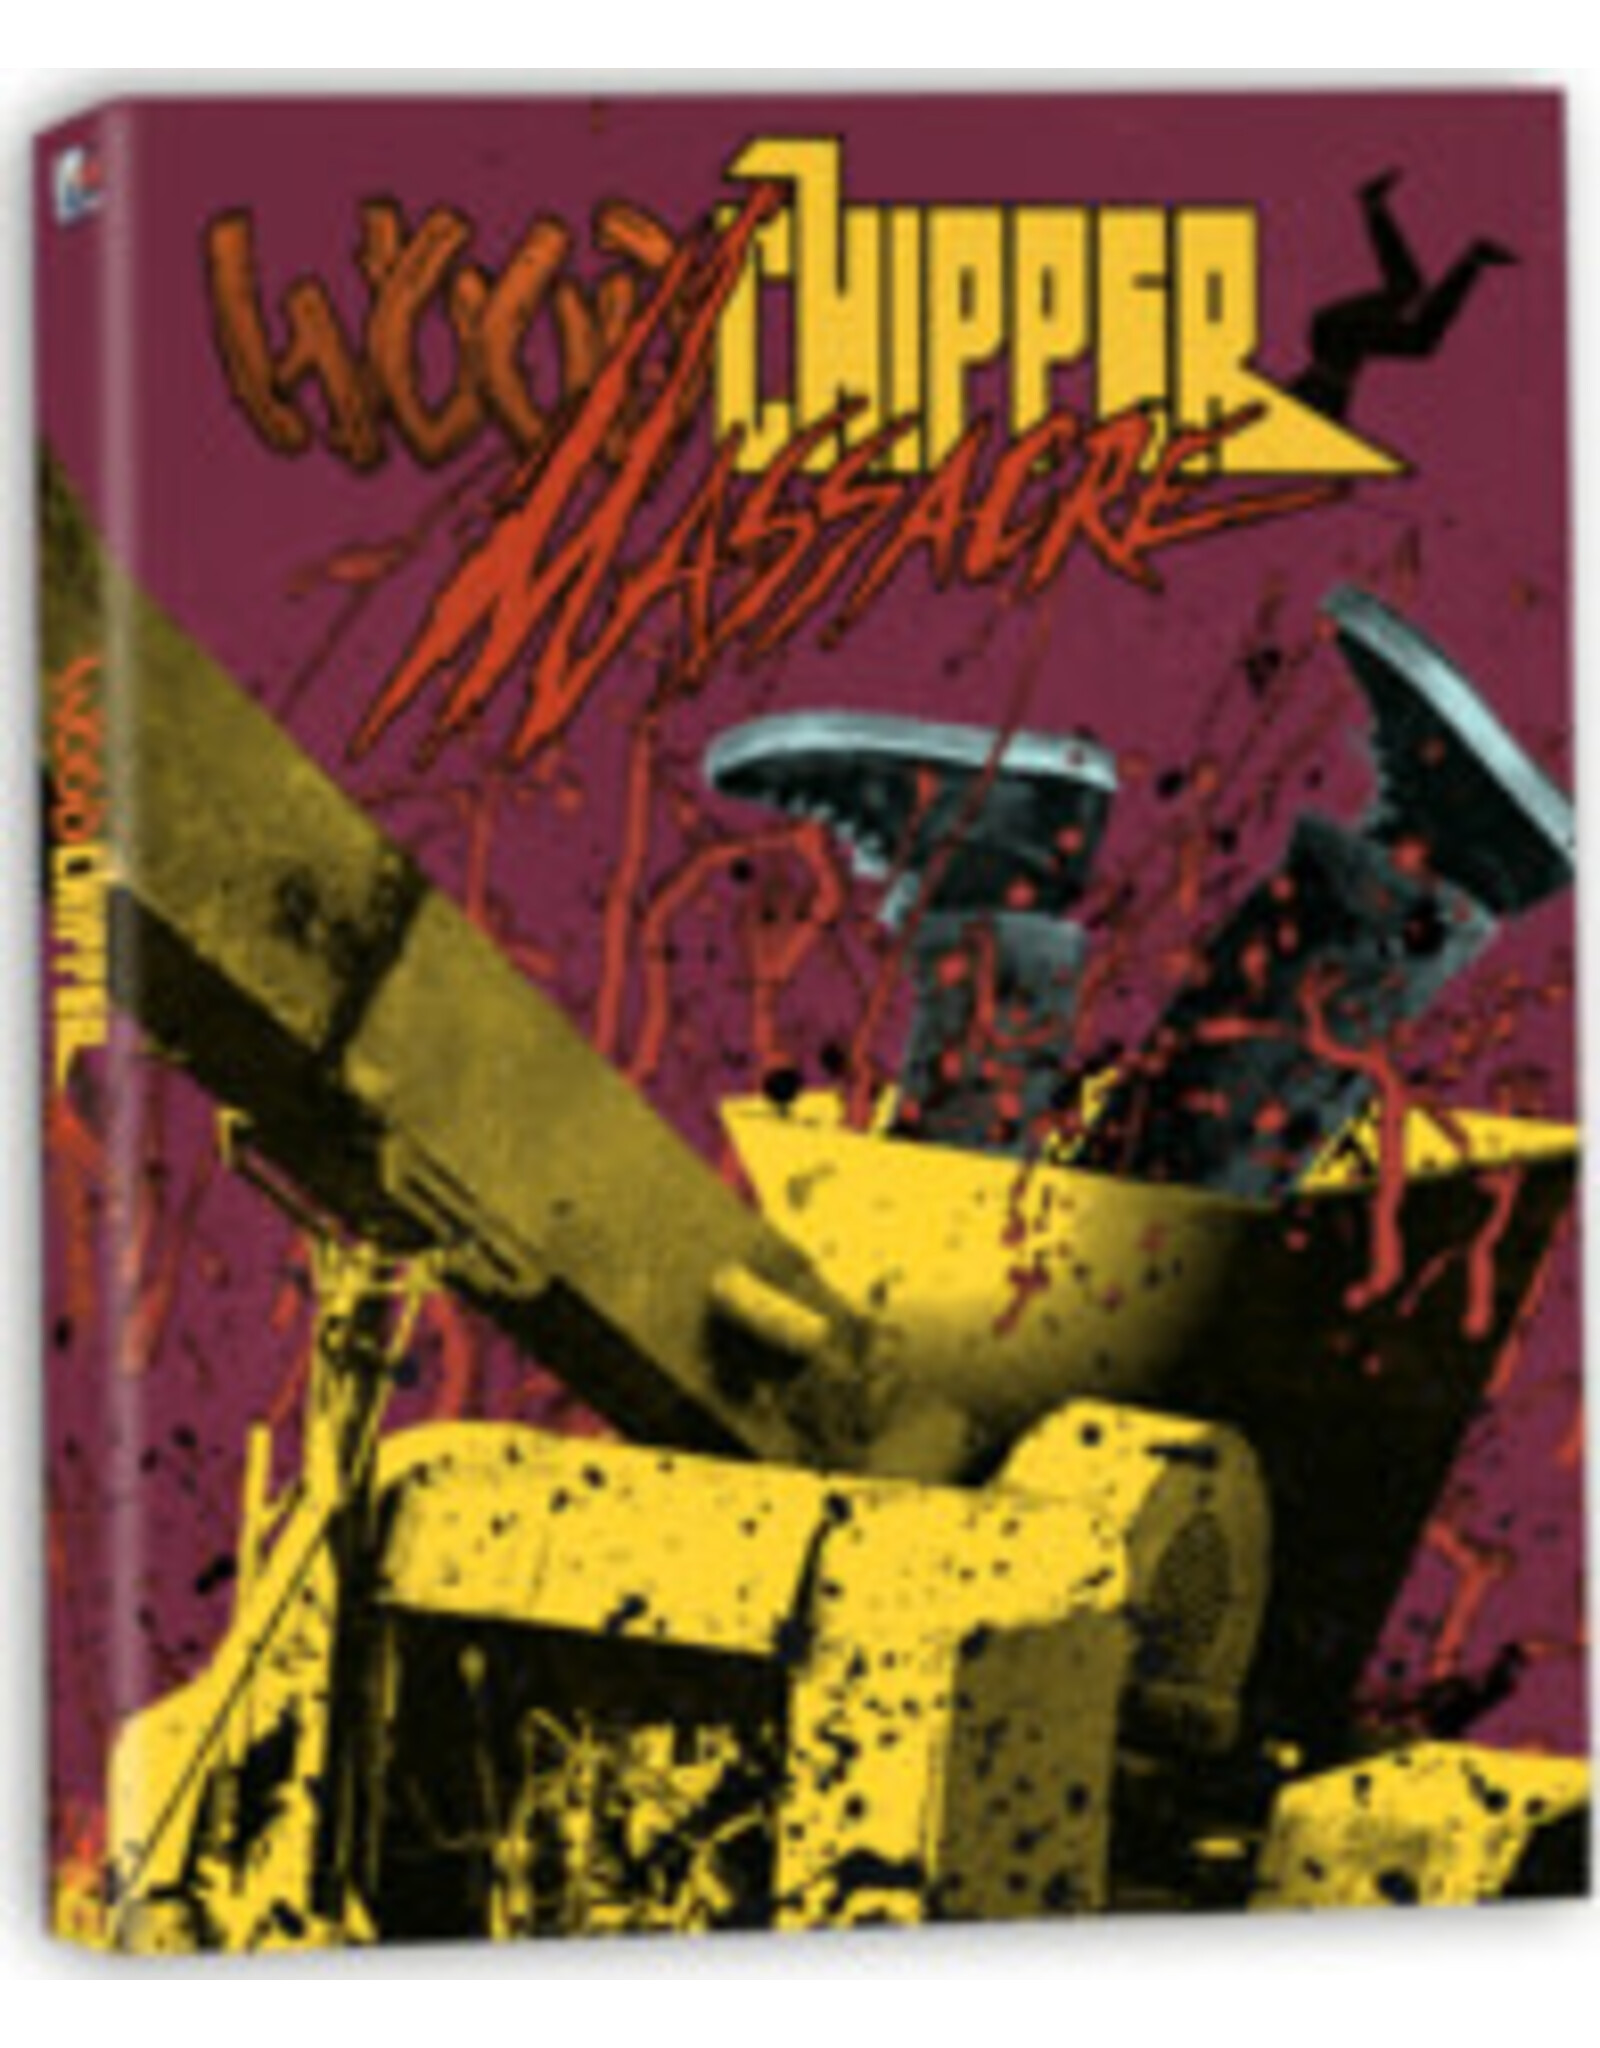 Horror Woodchipper Massacre - Terror Vision (Brand New w/ Slipcase)